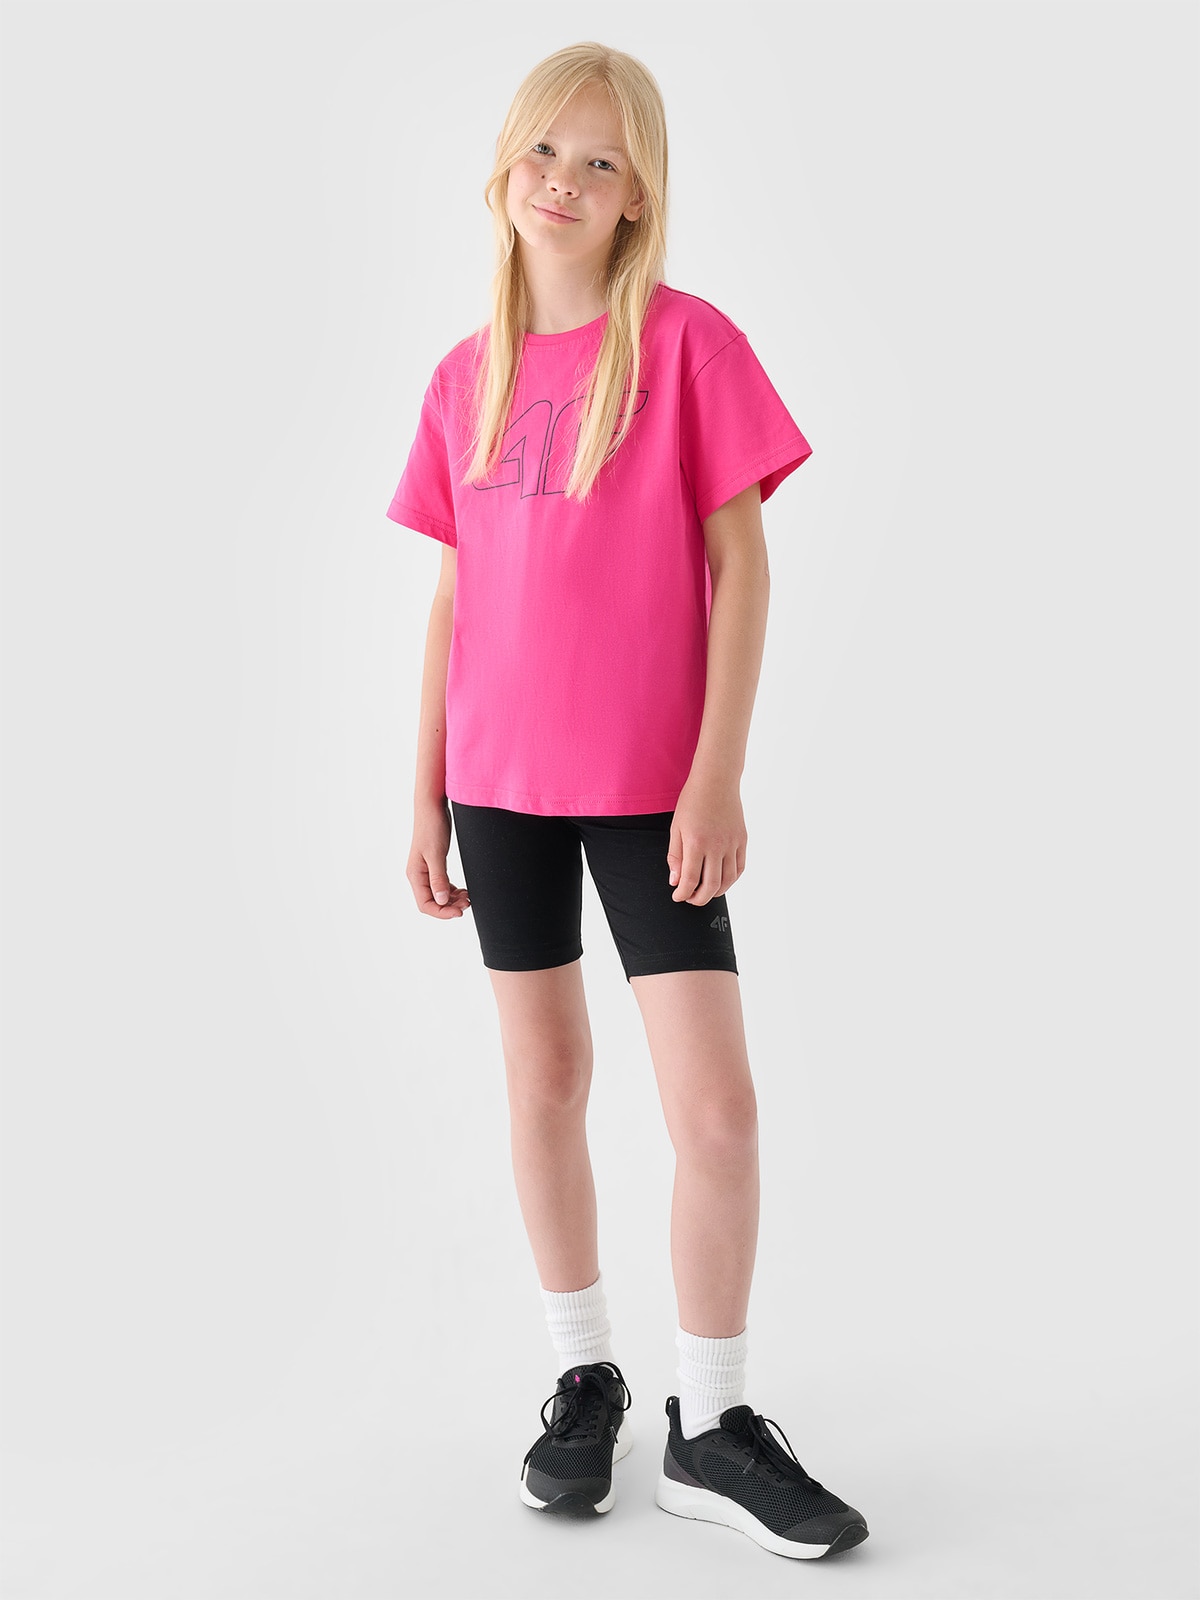 Dívčí tričko s potiskem - růžové